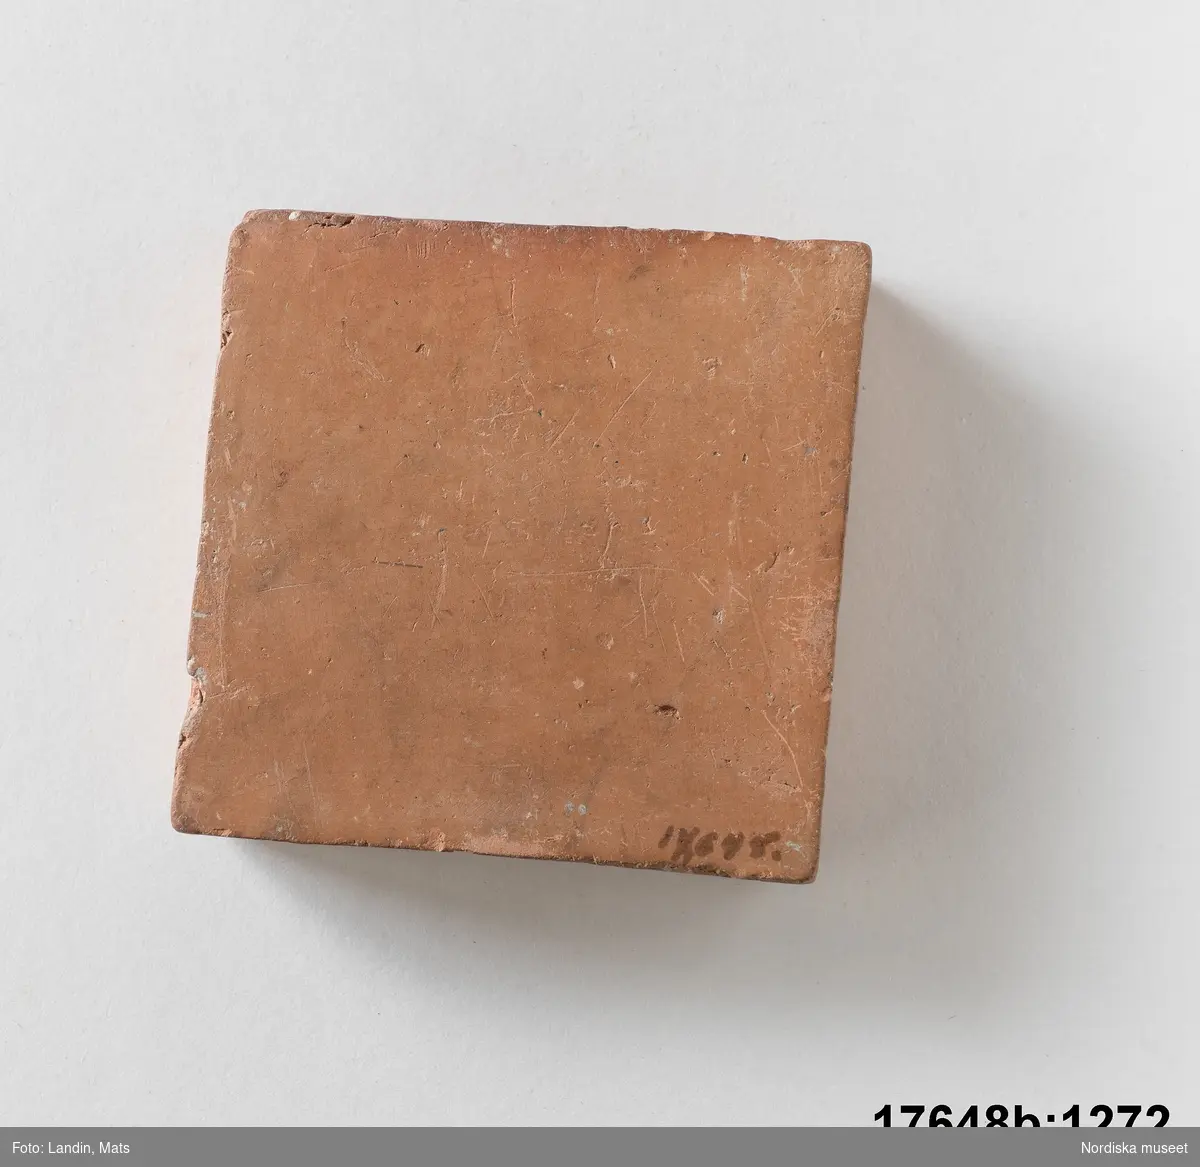 Kvadratisk platta av bränd oglaserad röd lera. På en sida text: "Bränd men oglaserad".
/Leif Wallin 2014-01-07